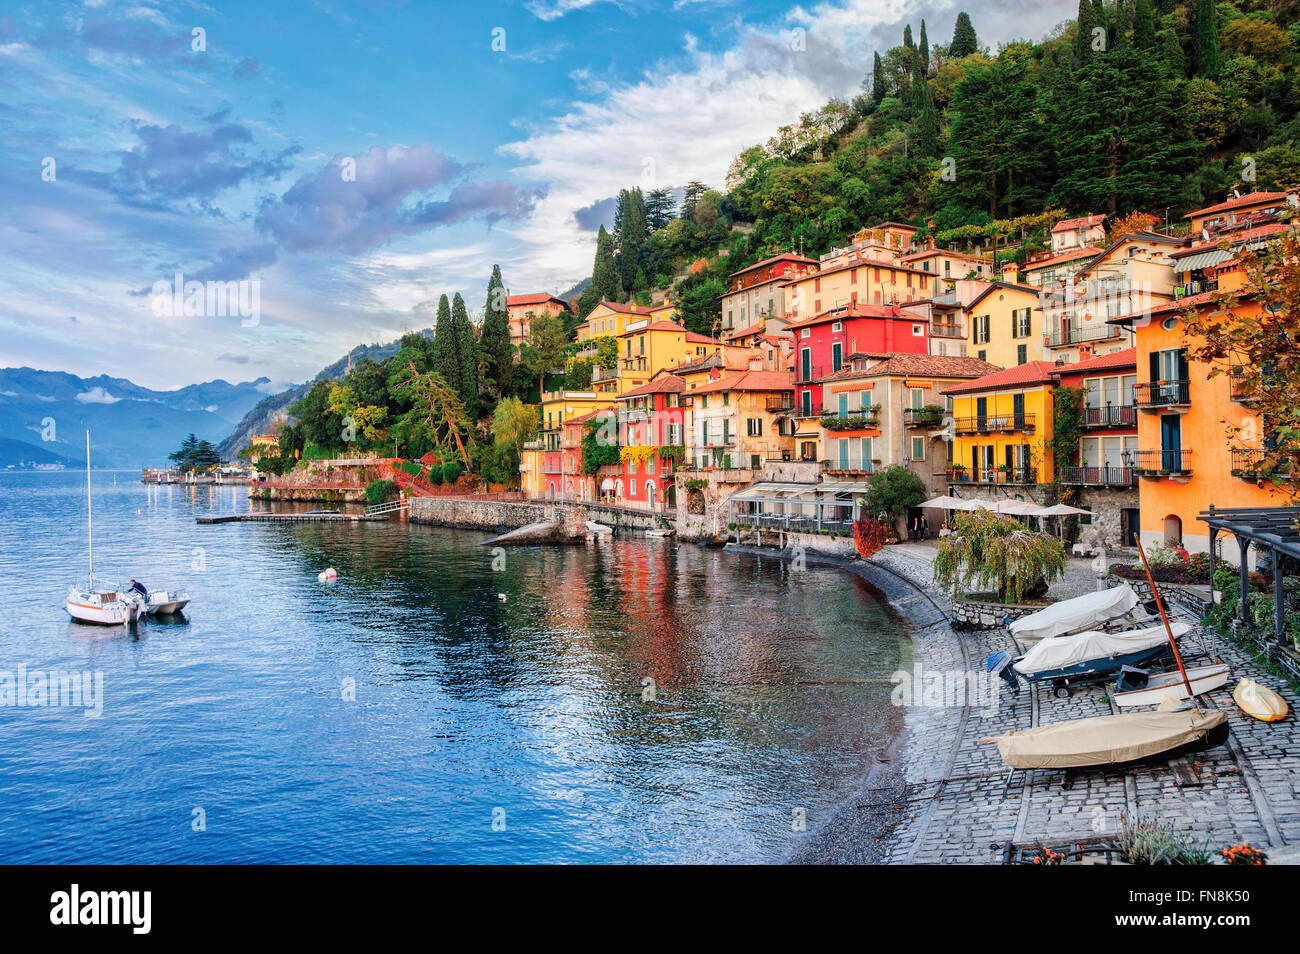 Town of Menaggio on lake Como, Milan, Italy Stock Photo